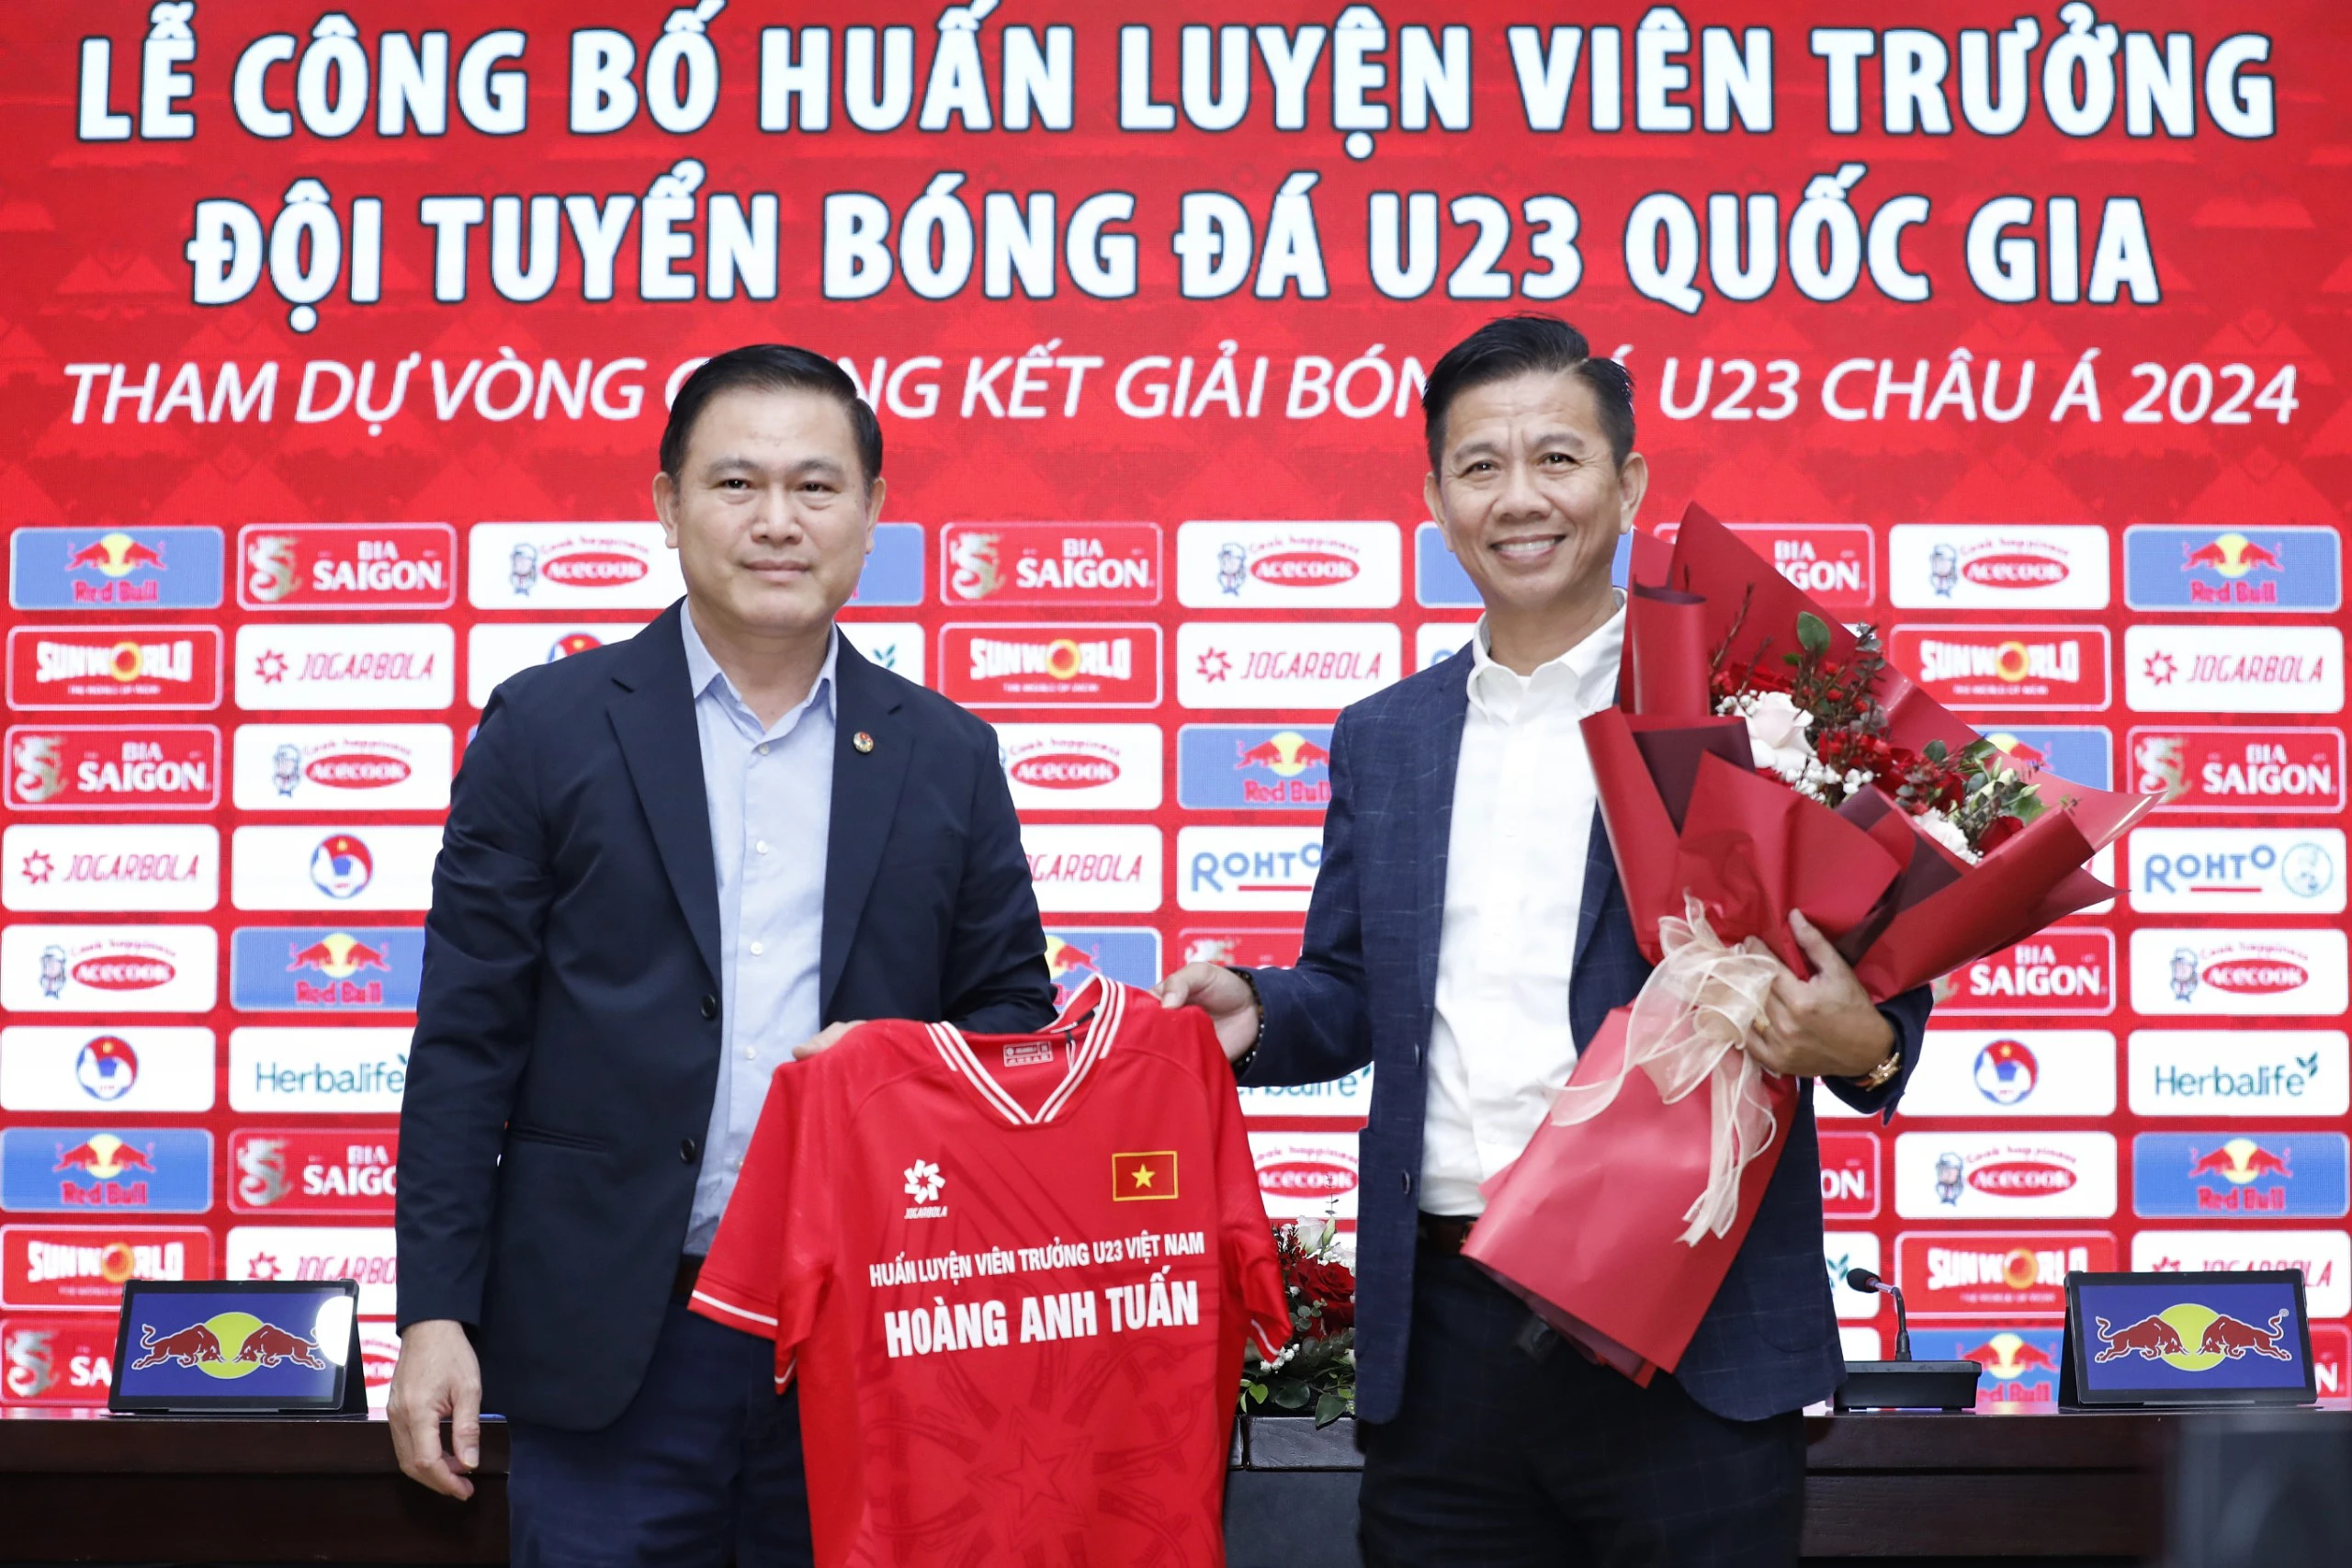 HLV Hoàng Anh Tuấn nói điều bất ngờ khi được công bố dẫn dắt U23 Việt Nam